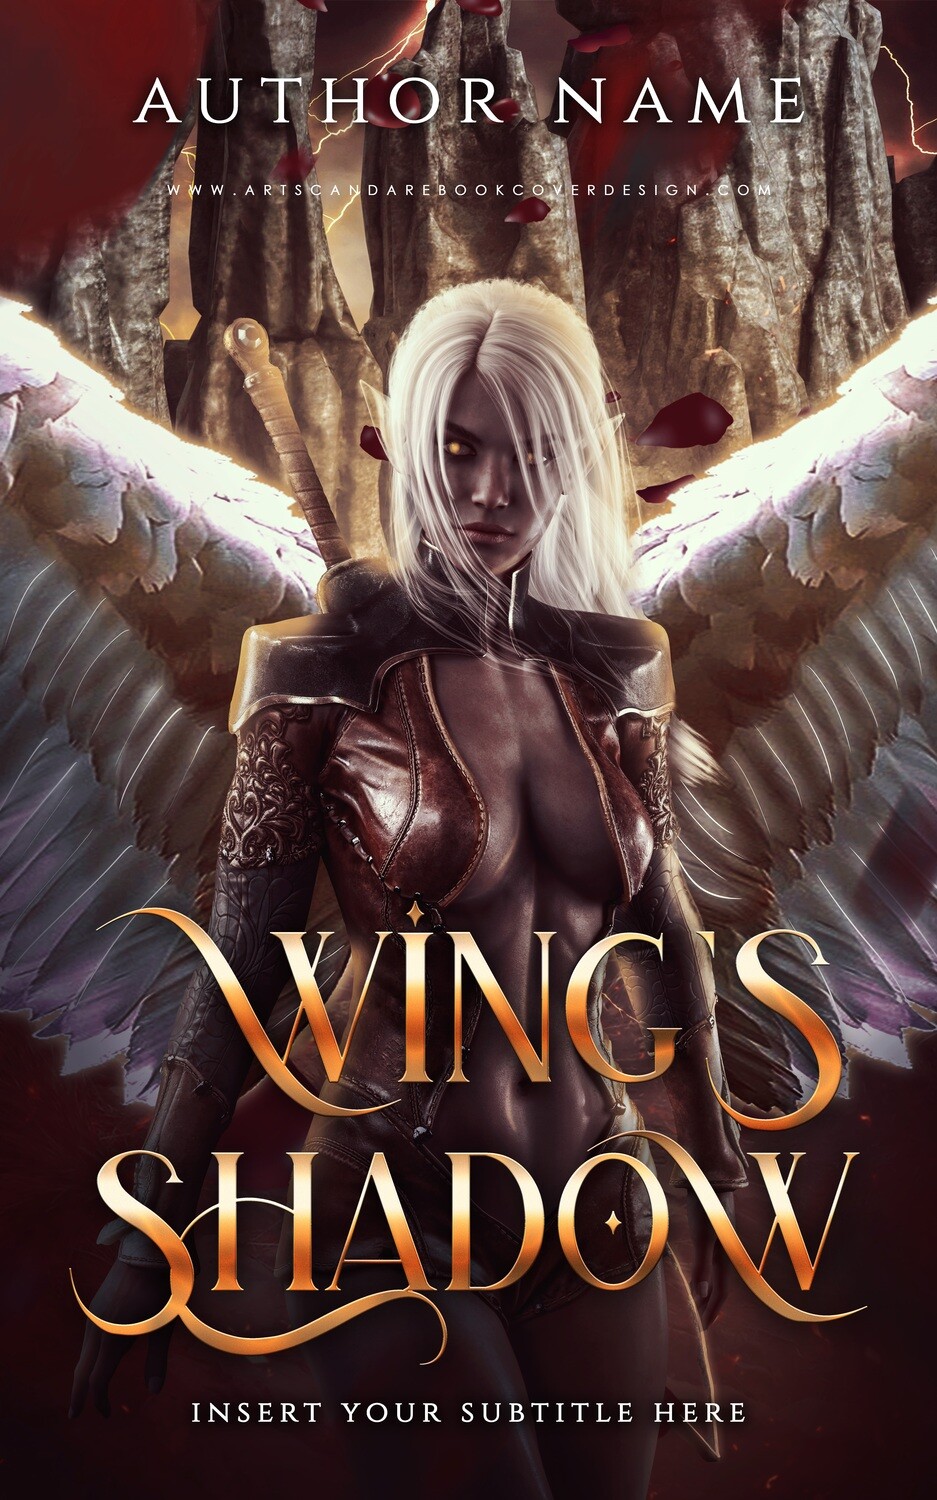 Ebook: Wing's Shadow